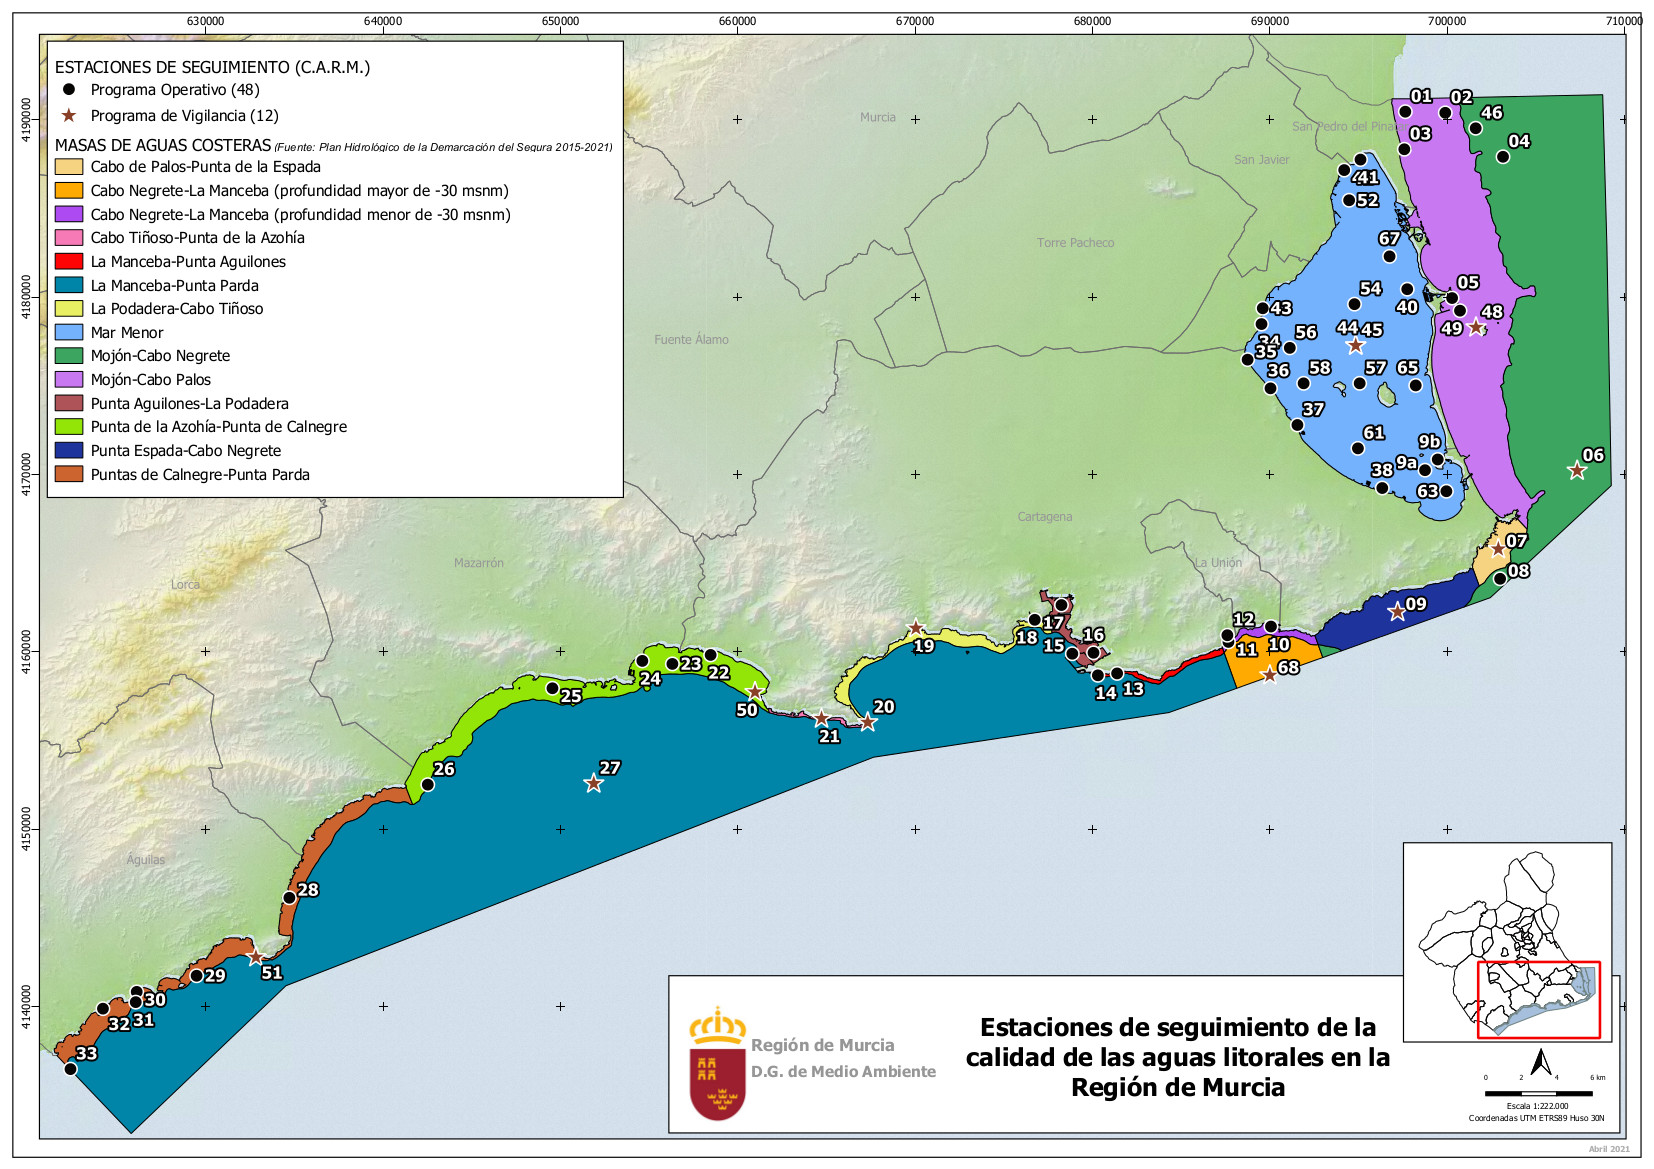 Estaciones de seguimiento de la calidad de las aguas litorales en la Región de Murcia